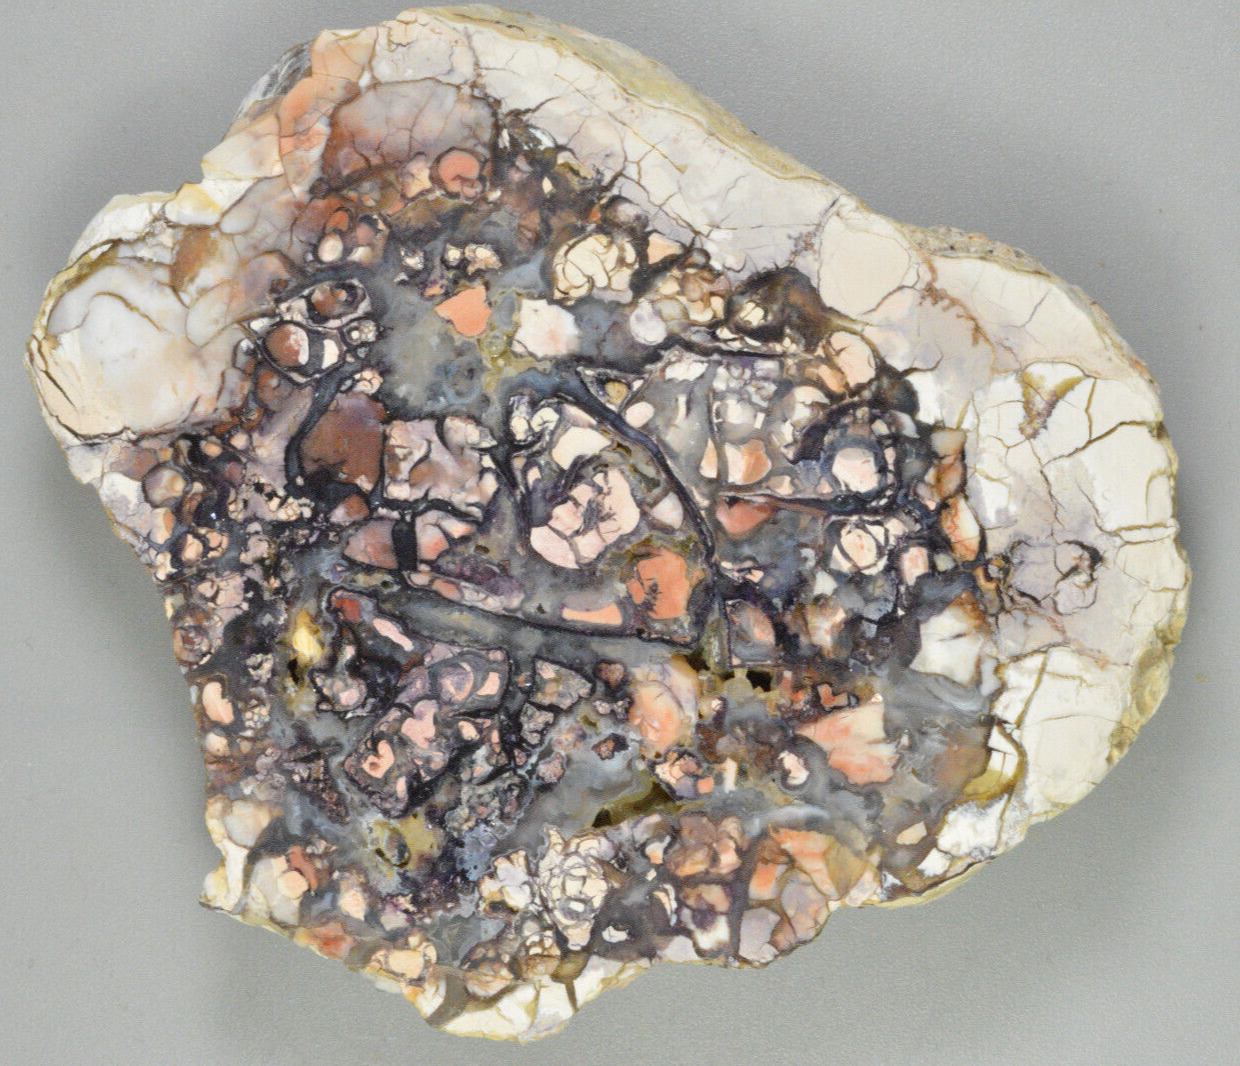 TIffany Stone, Polished,  (Opalized Fluorite) Spor Mountain,Utah, 3.6x2.9x0.6\